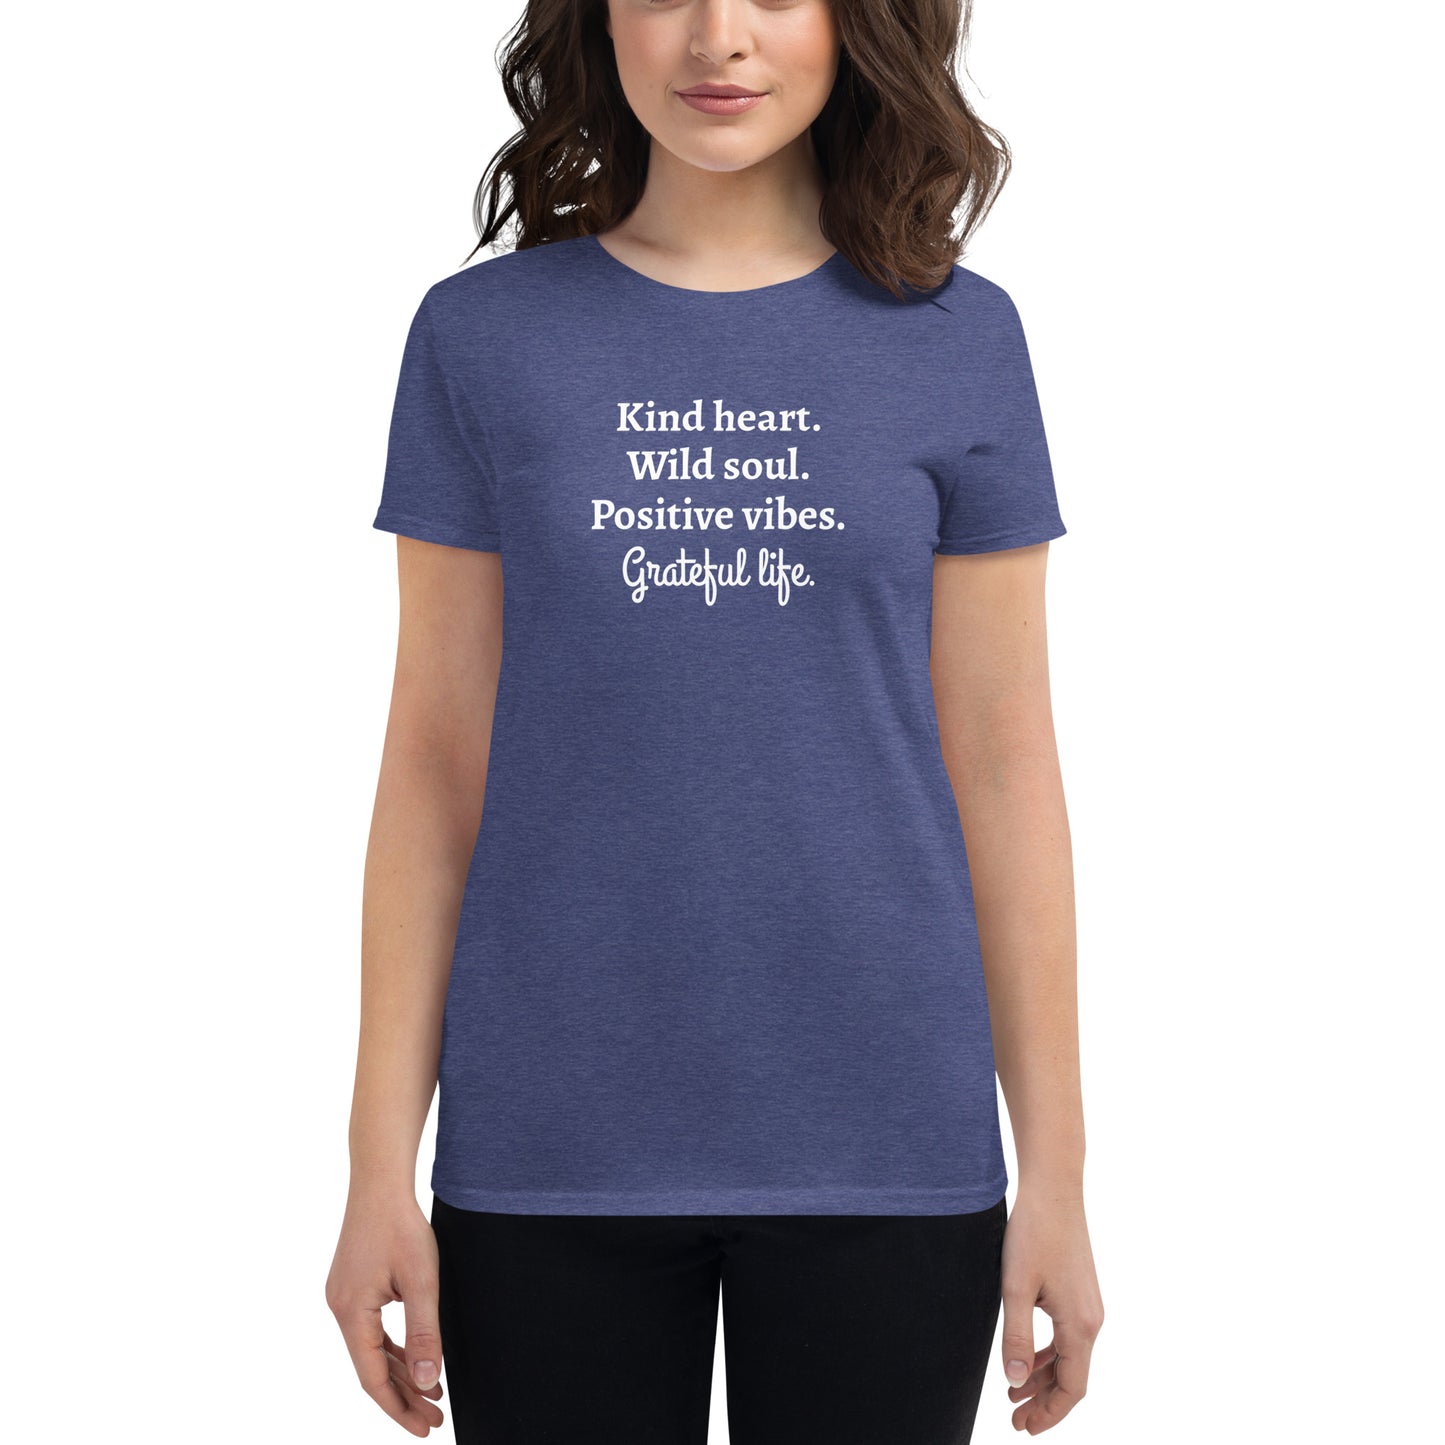 Grateful Life women's short sleeve t-shirt